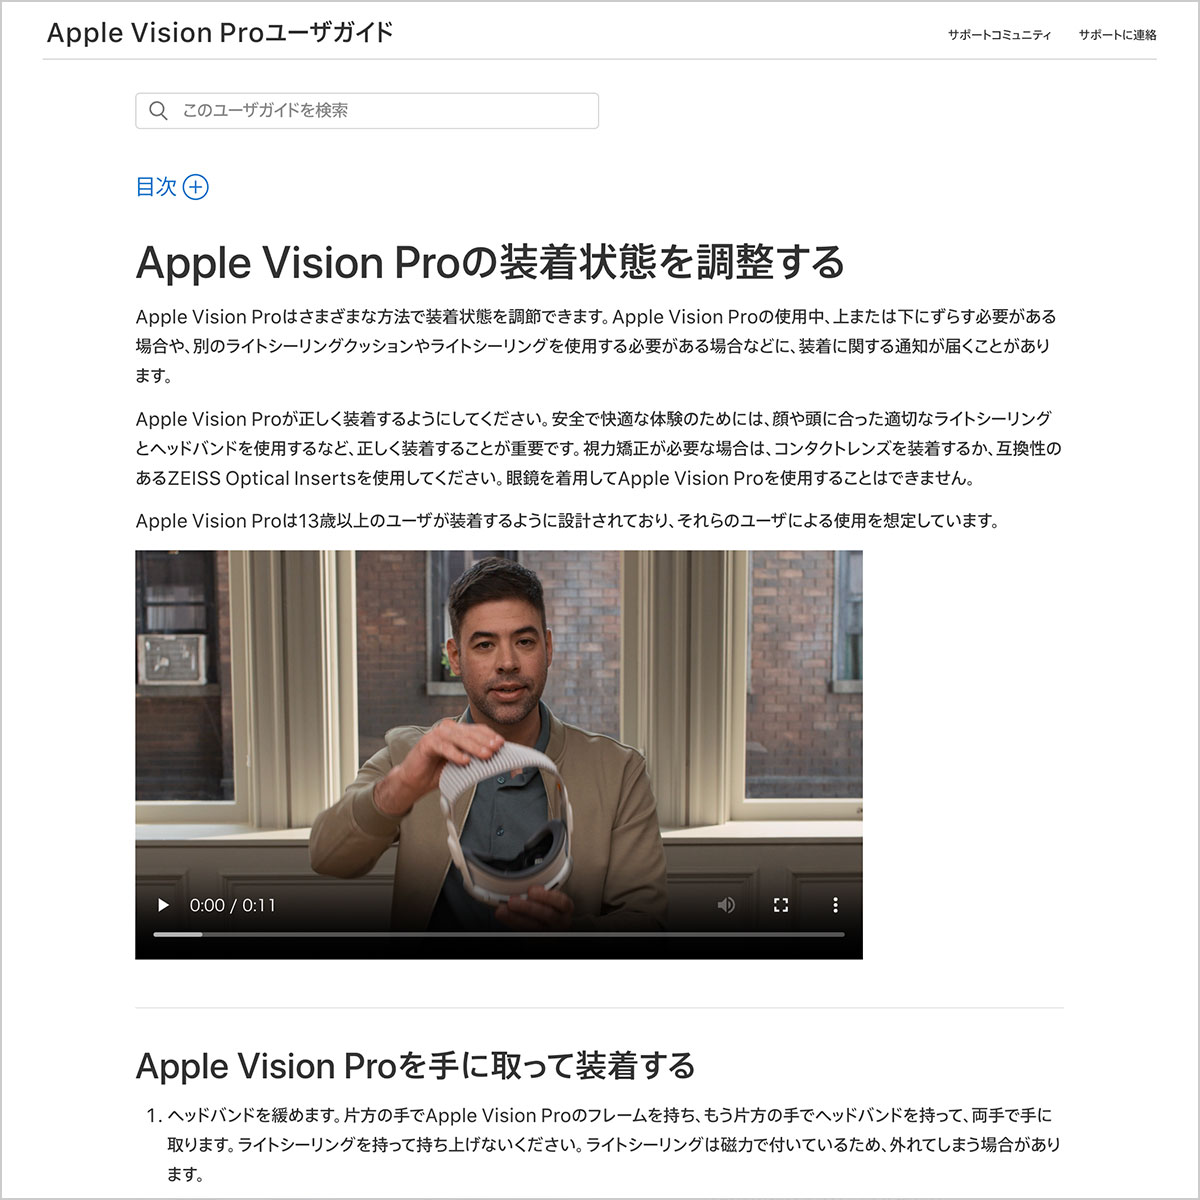 Apple Vision Proユーザガイド